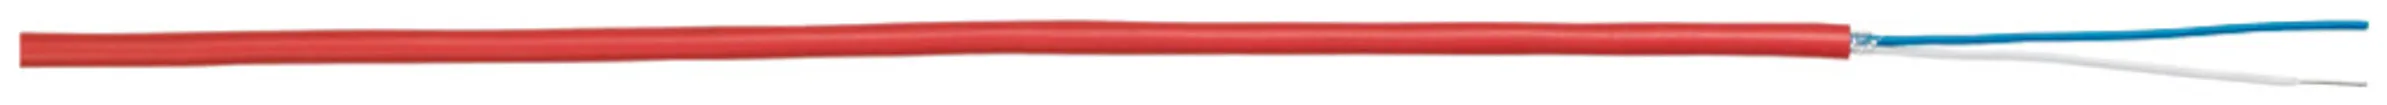 Câble de détection incendie G51, 2×2×0.8mm sans halogène rouge Cca 